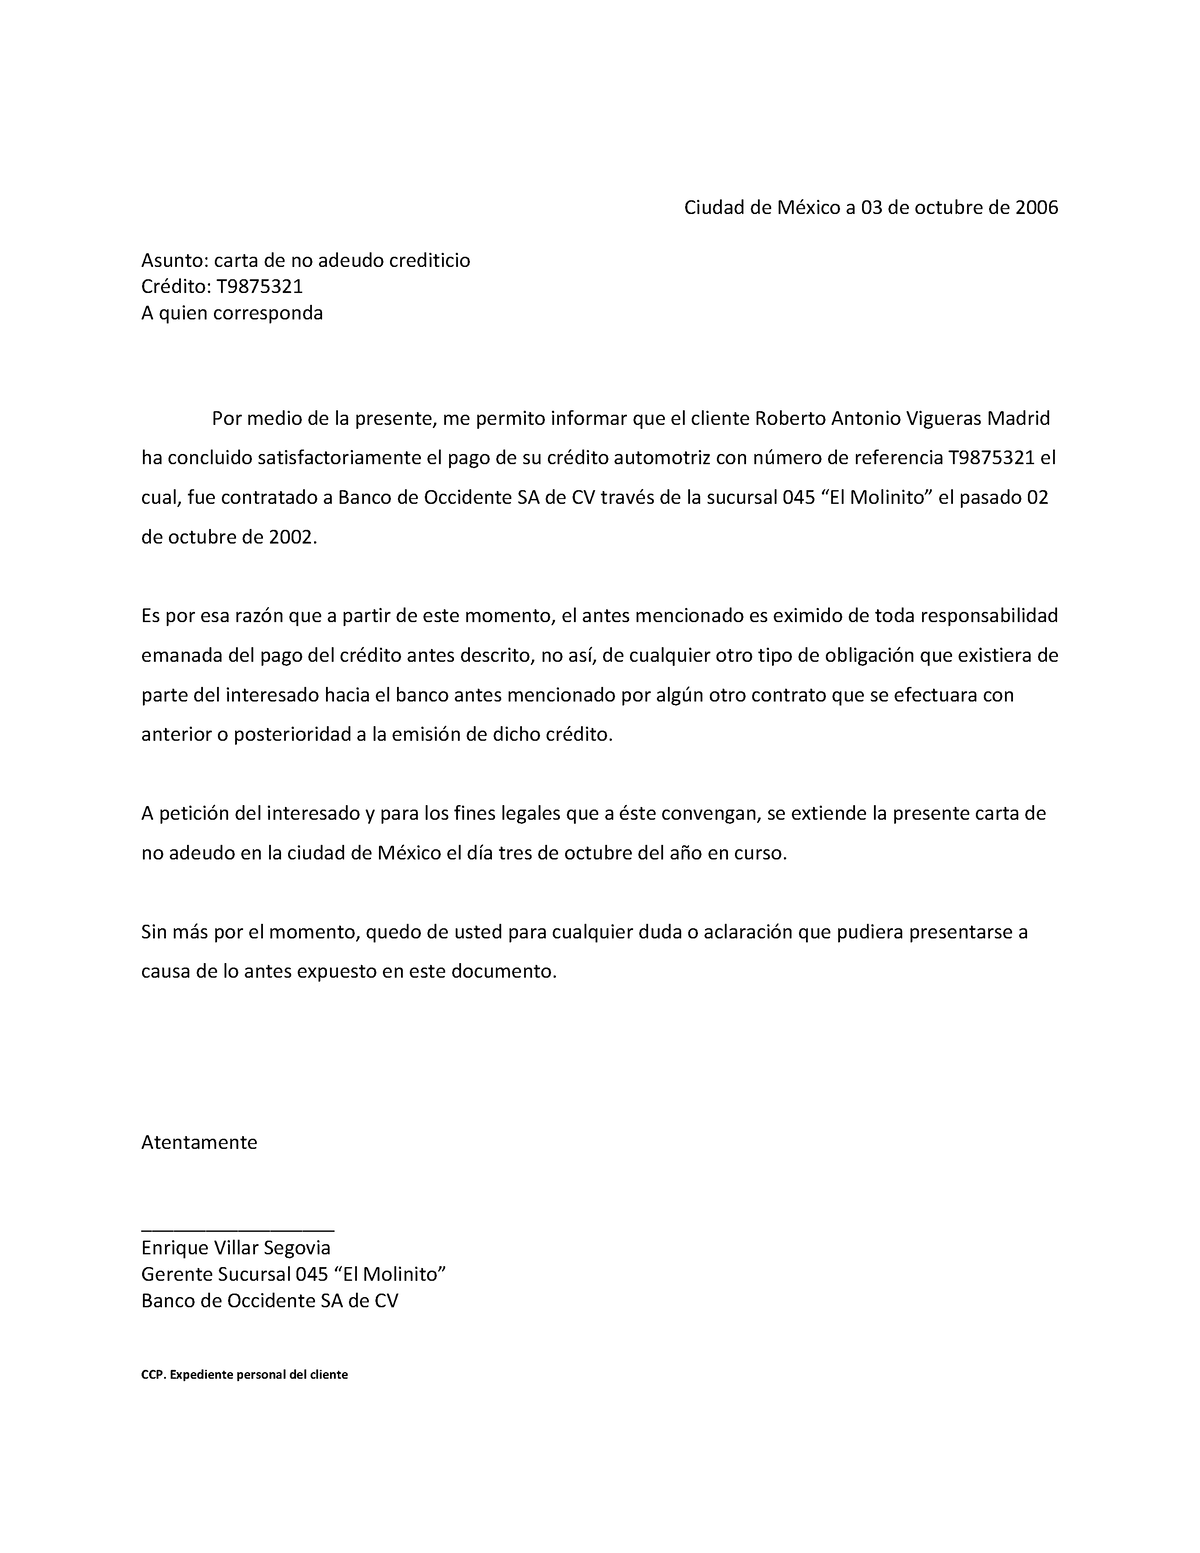 Ejemplo Carta de no Adeudo - Ciudad de MÈxico a 03 de octubre de 2006  Asunto: carta de no adeudo - Studocu